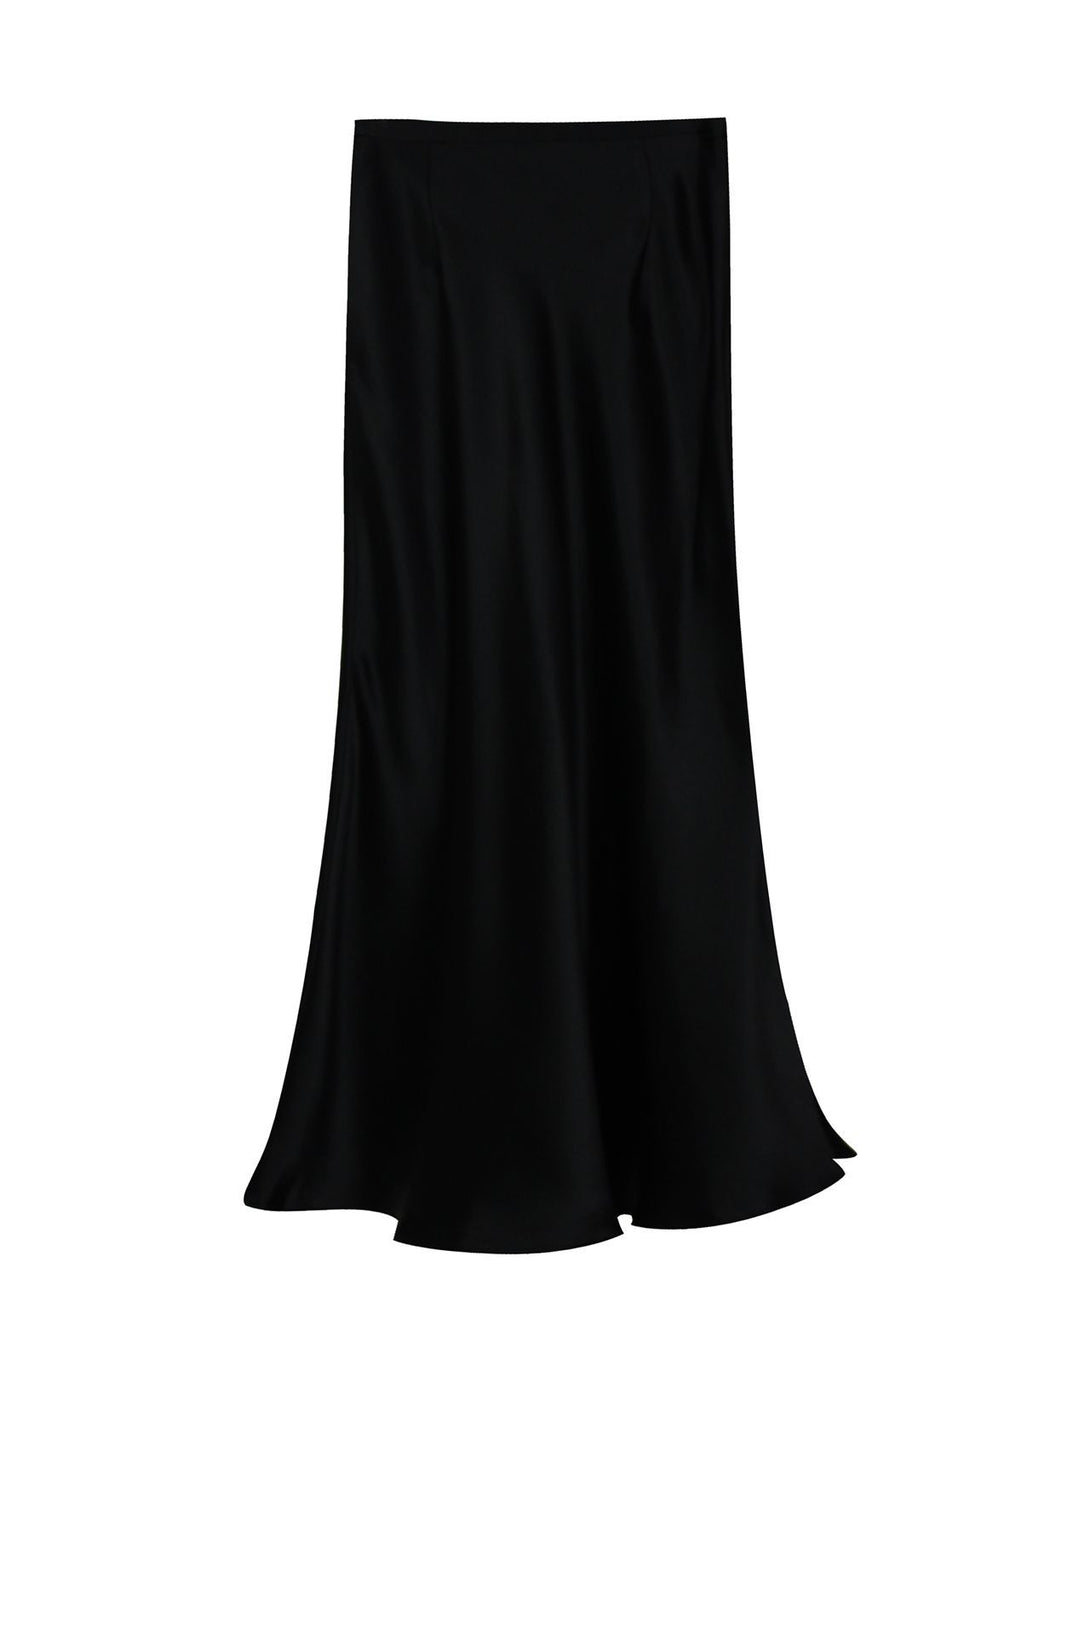 Designer-Silk-Skirt-In-Black-For-Womens-By-Kyle-Richards